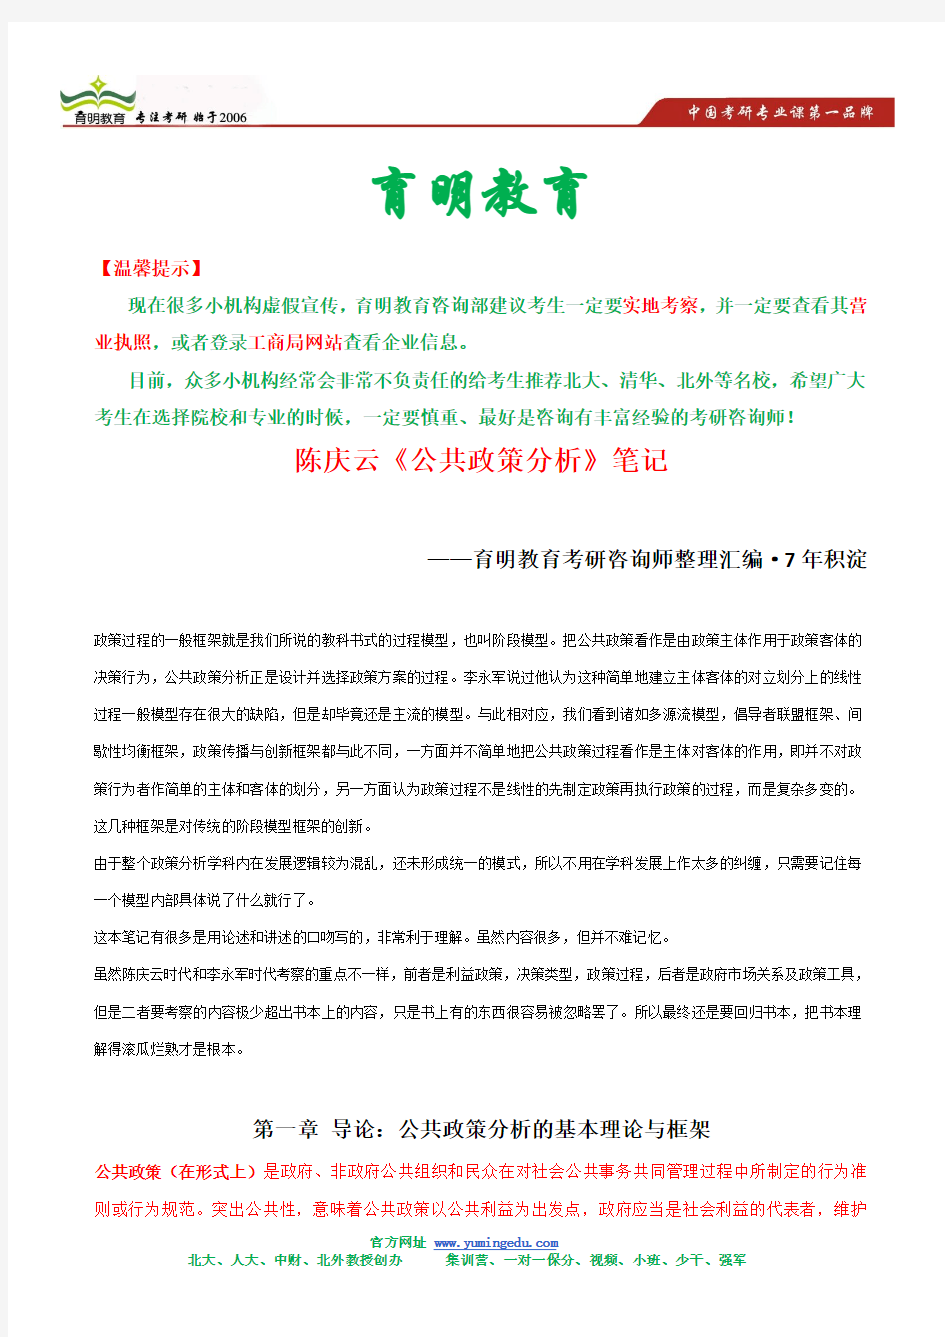 陈庆云 公共政策分析 考研笔记背诵版